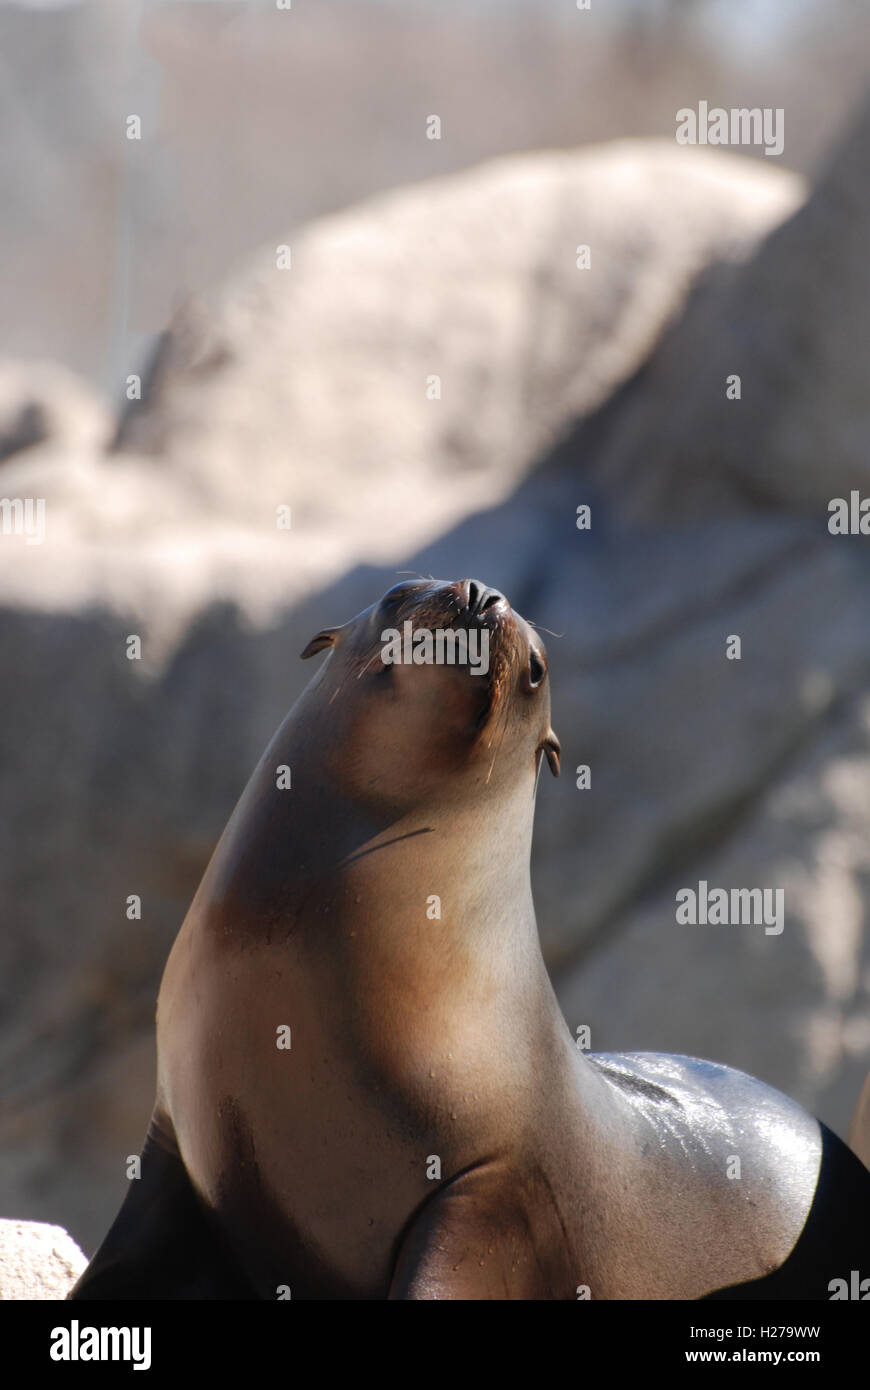 Adorabili Sea Lion su rocce con il suo naso verso il cielo. Foto Stock